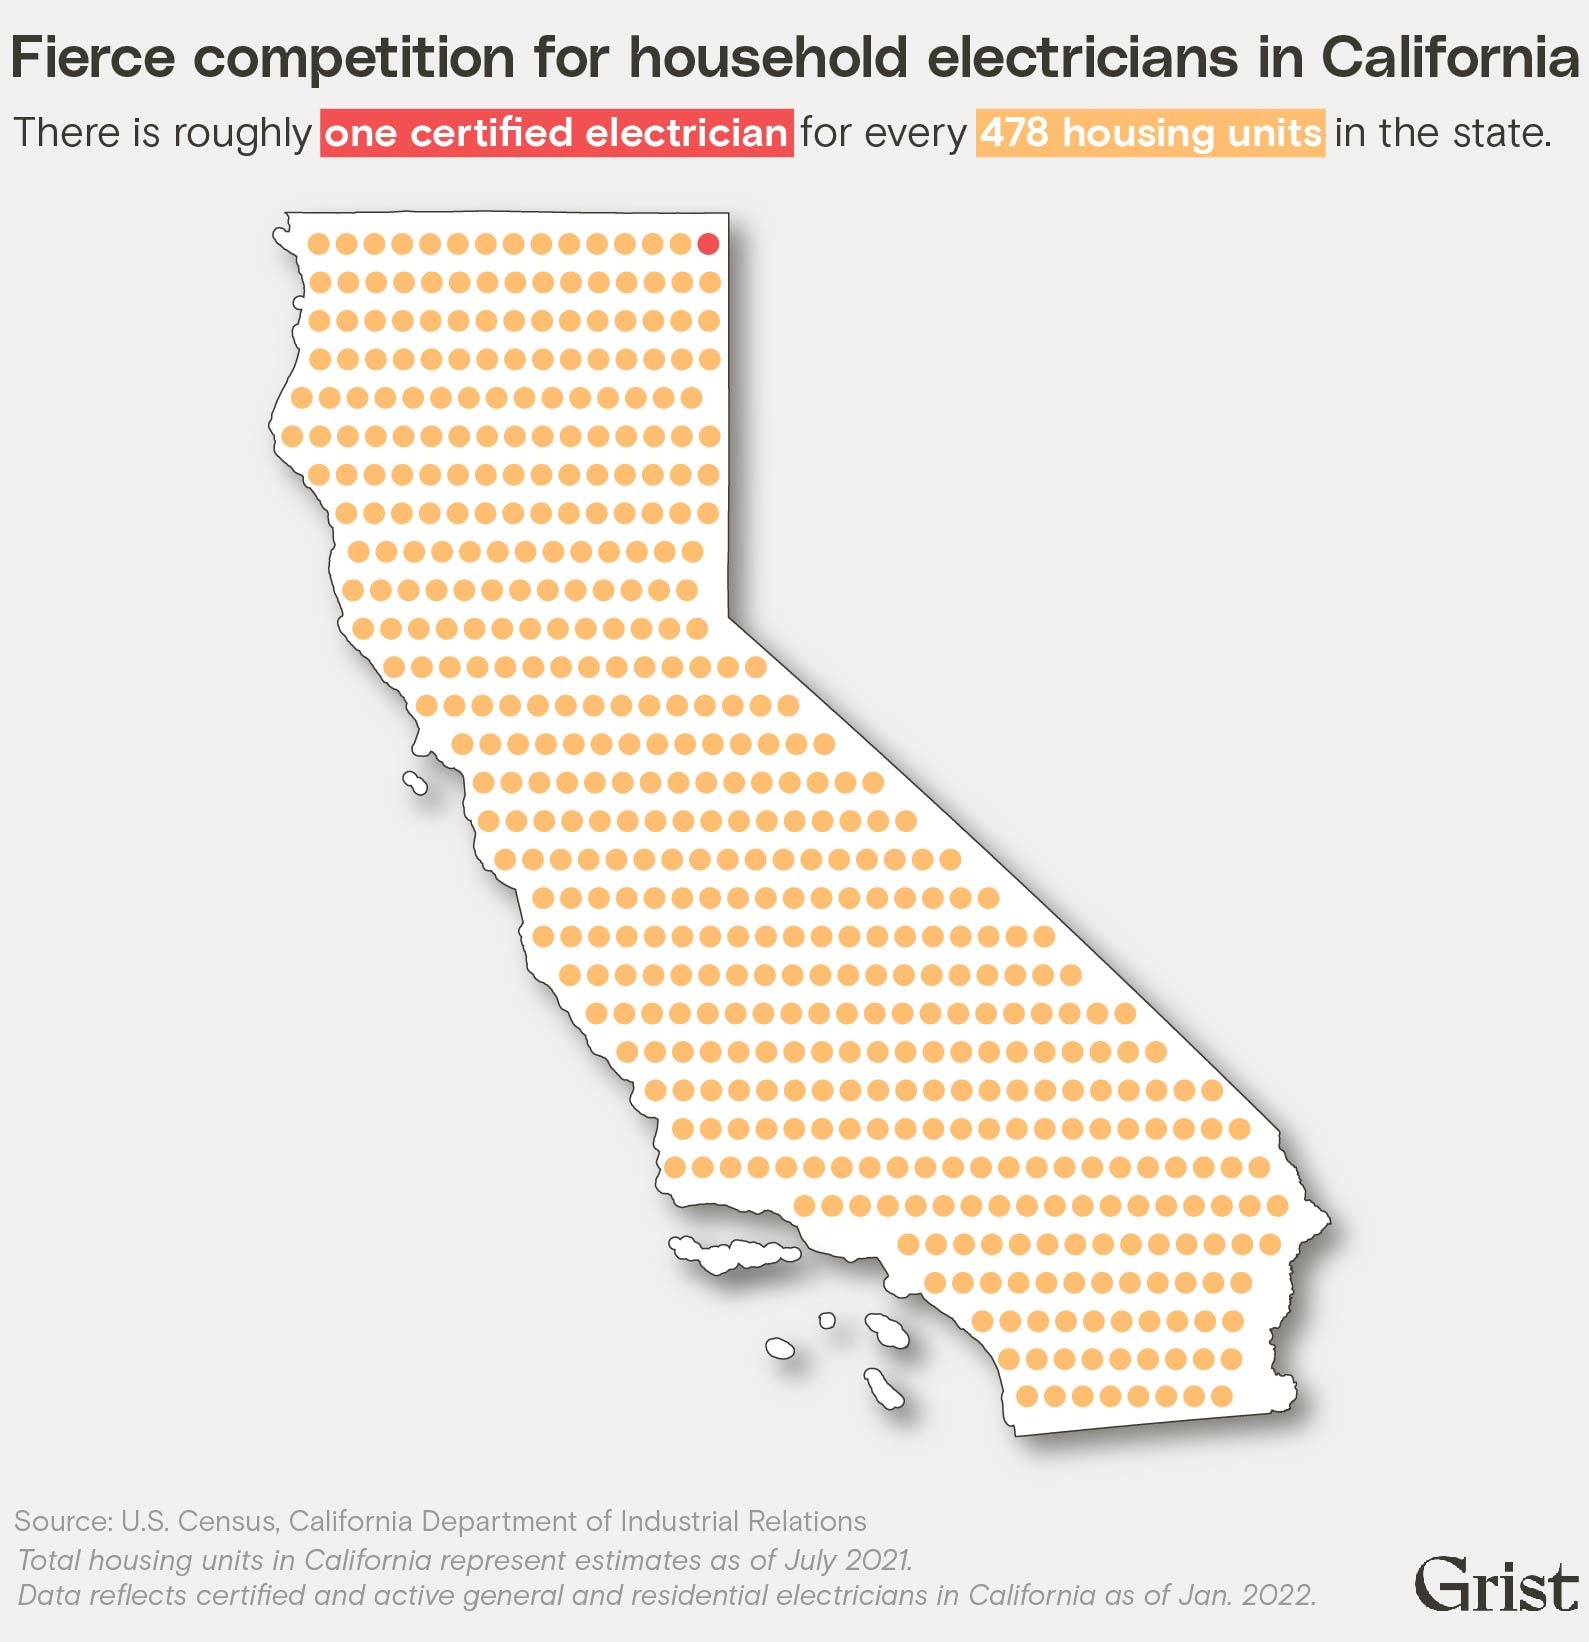 Un pictogramme en forme de Californie montre qu'il y a environ un électricien certifié qualifié pour travailler sur les foyers pour 478 unités de logement dans l'État.